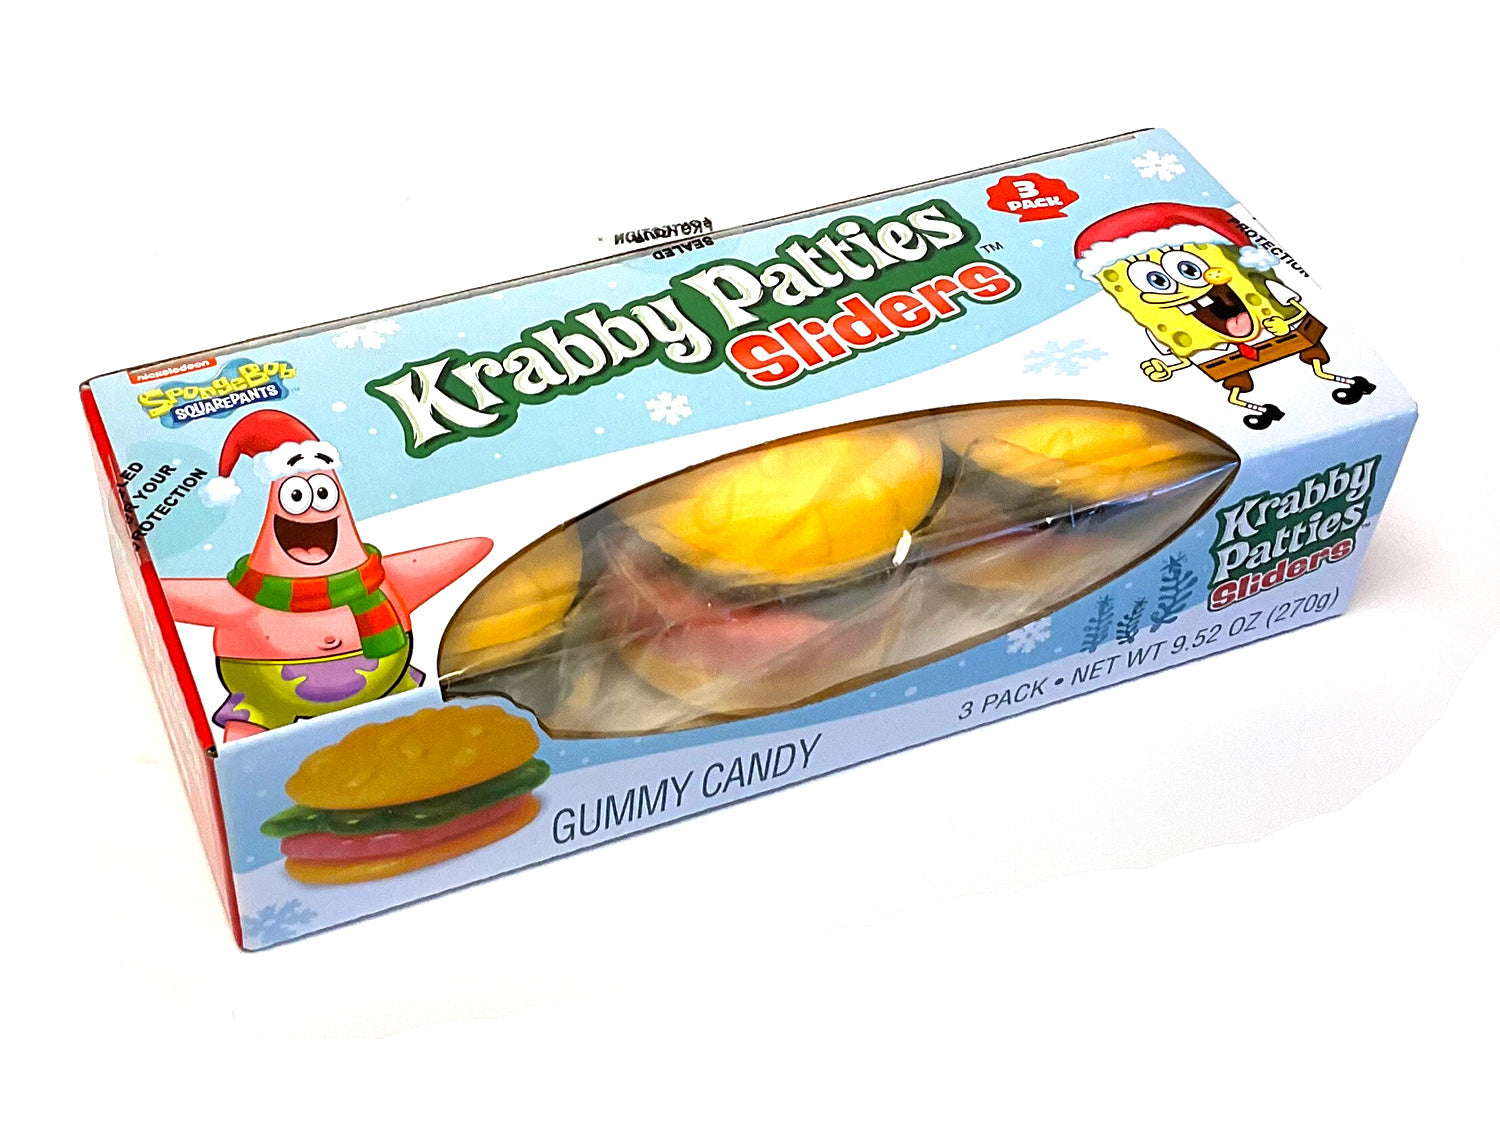 Krabby Patties Sliders - 9.25 oz pack